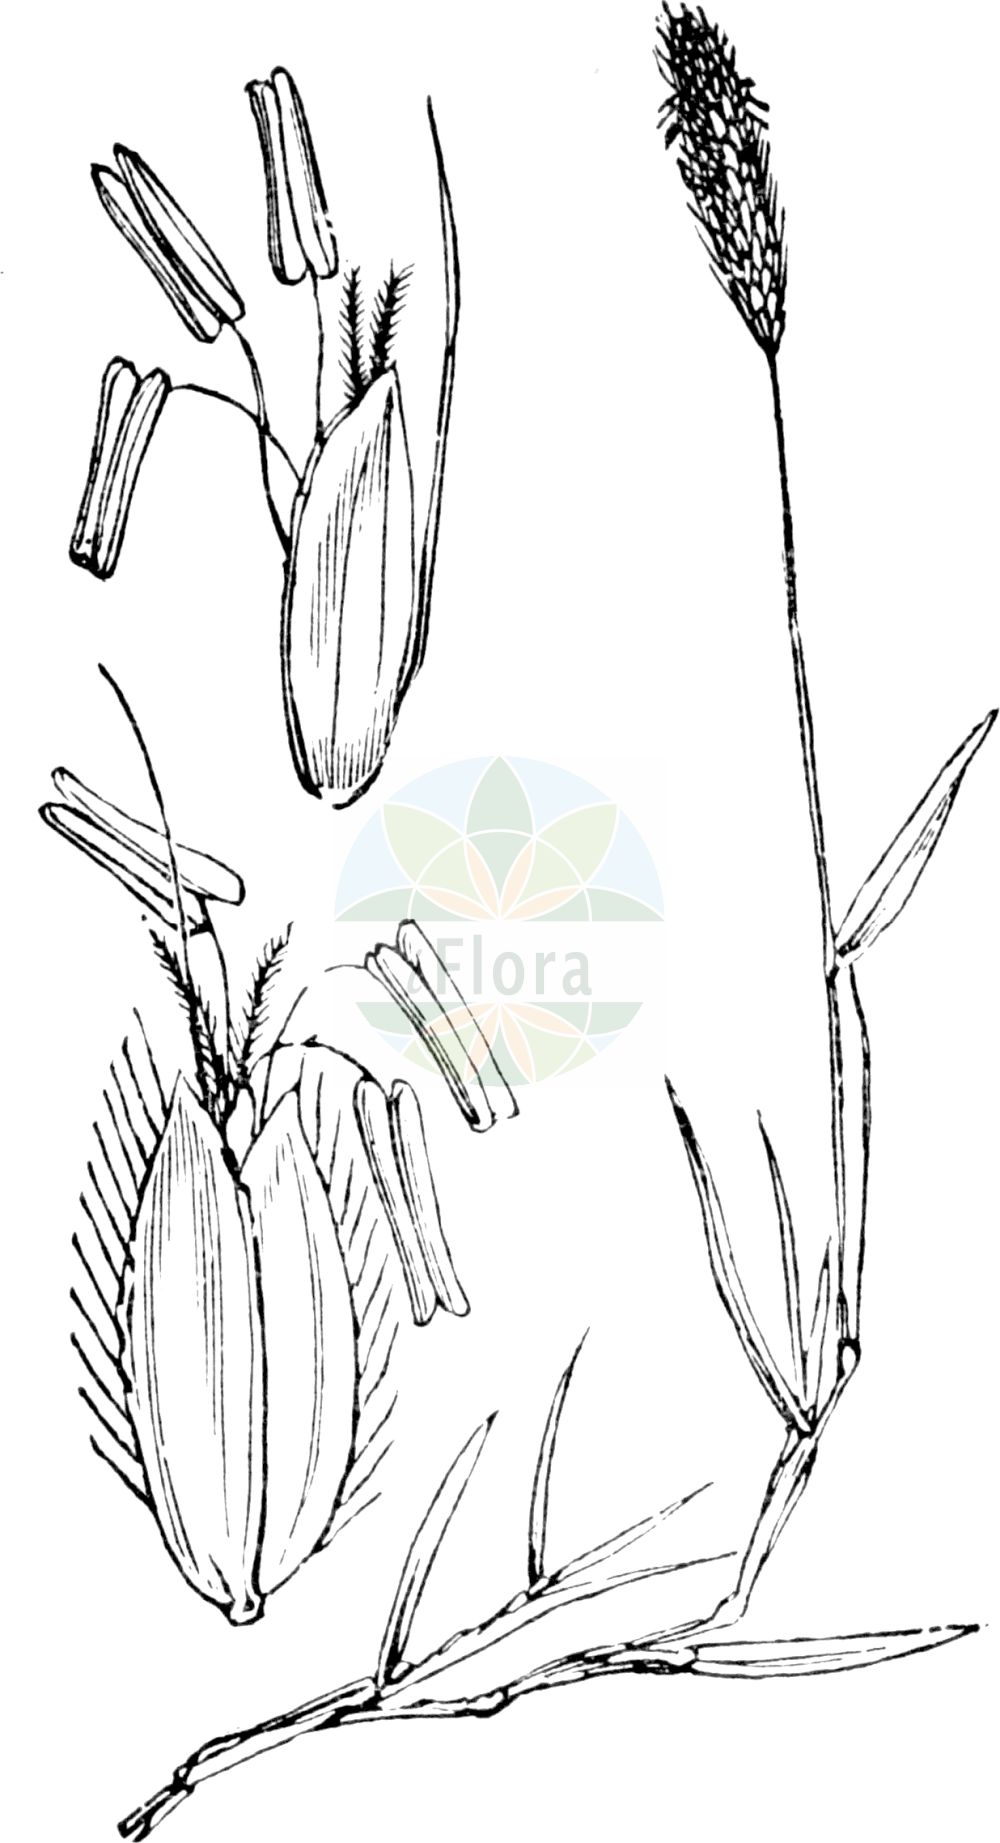 Historische Abbildung von Alopecurus geniculatus (Knick-Fuchsschwanzgras - Marsh Foxtail). Das Bild zeigt Blatt, Bluete, Frucht und Same. ---- Historical Drawing of Alopecurus geniculatus (Knick-Fuchsschwanzgras - Marsh Foxtail). The image is showing leaf, flower, fruit and seed.(Alopecurus geniculatus,Knick-Fuchsschwanzgras,Marsh Foxtail,Alopecurus geniculatus,Knick-Fuchsschwanzgras,Geknietes Fuchsschwanzgras,Knick-Fuchsschwanz,Marsh Foxtail,Floating Foxtail,Kneed Foxtail,Water Foxtail,Alopecurus,Fuchsschwanzgras,Foxtail,Poaceae,Süßgräser,Grass family,Blatt,Bluete,Frucht,Same,leaf,flower,fruit,seed,Fitch et al. (1880))